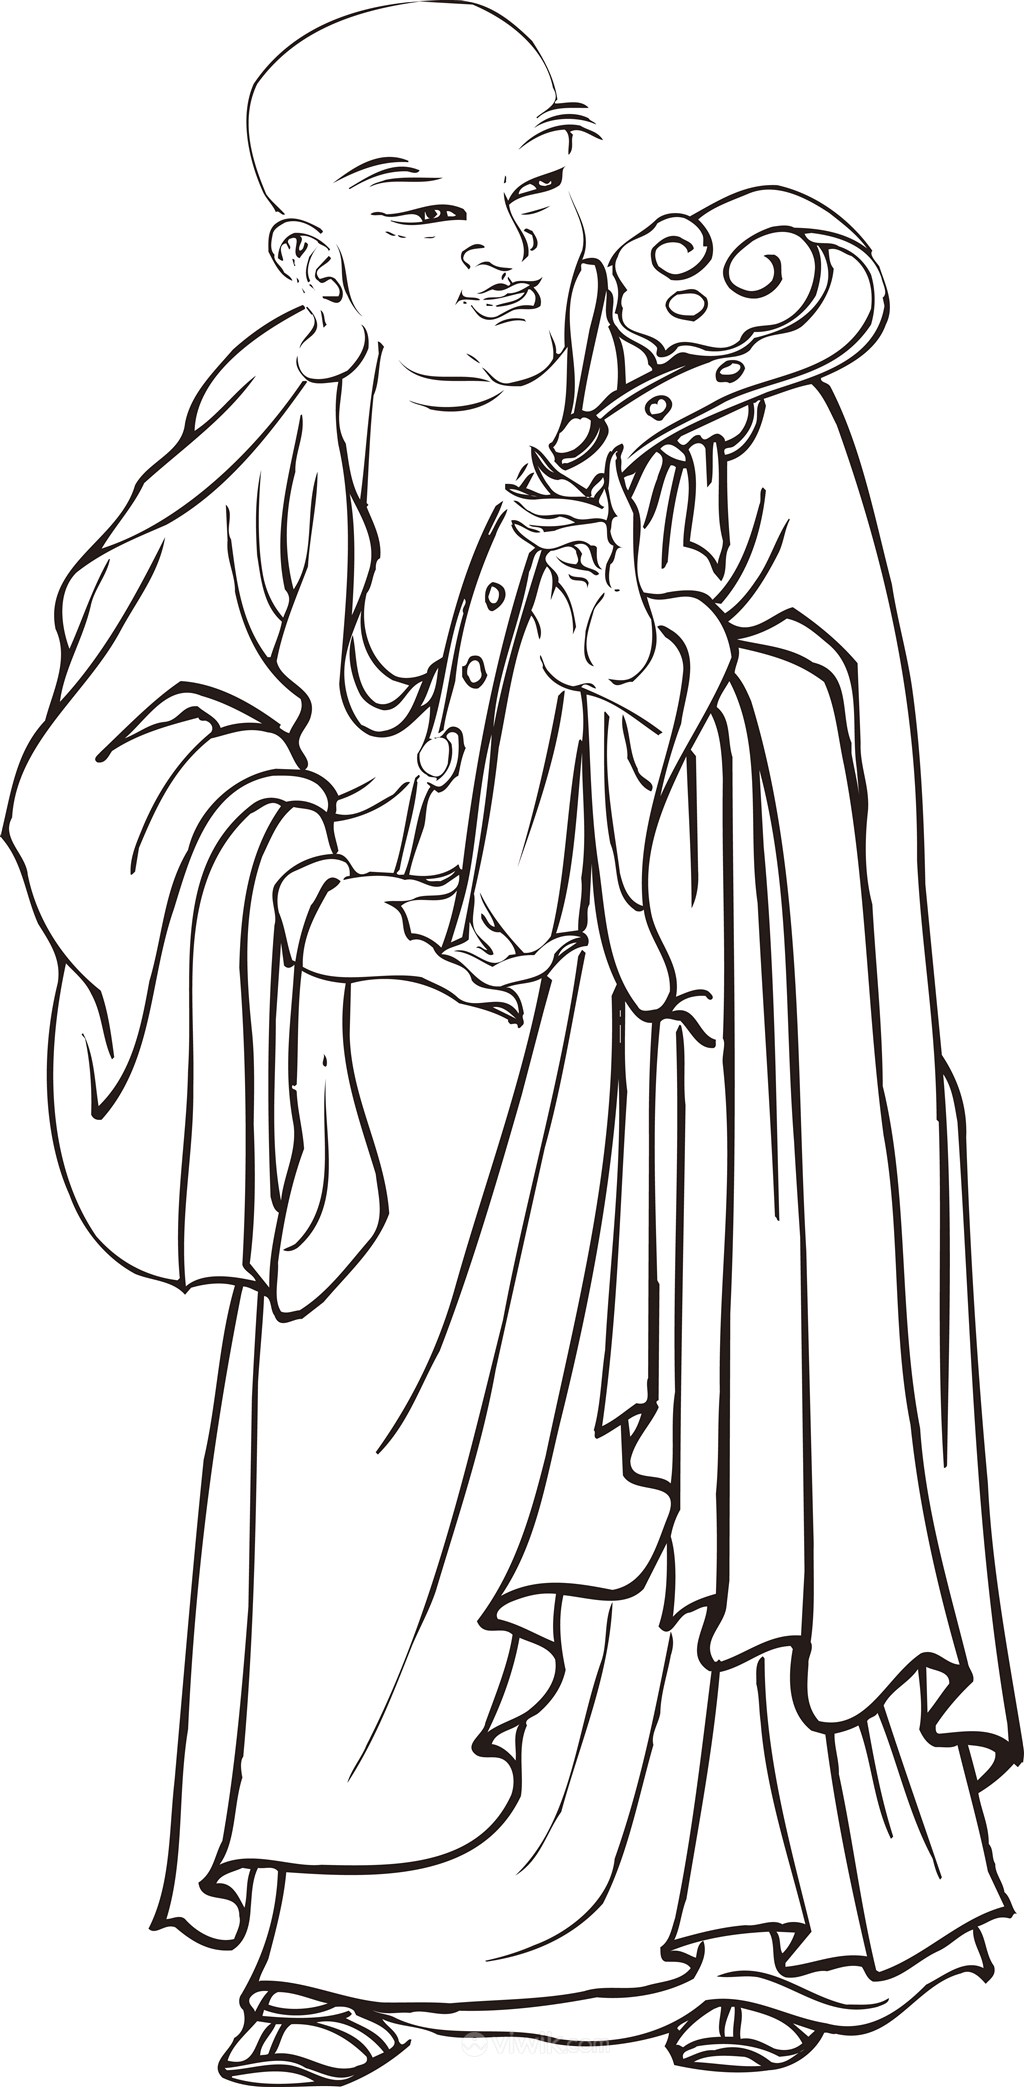 手托玉如意的僧人手绘线描108罗汉矢量绘画图片